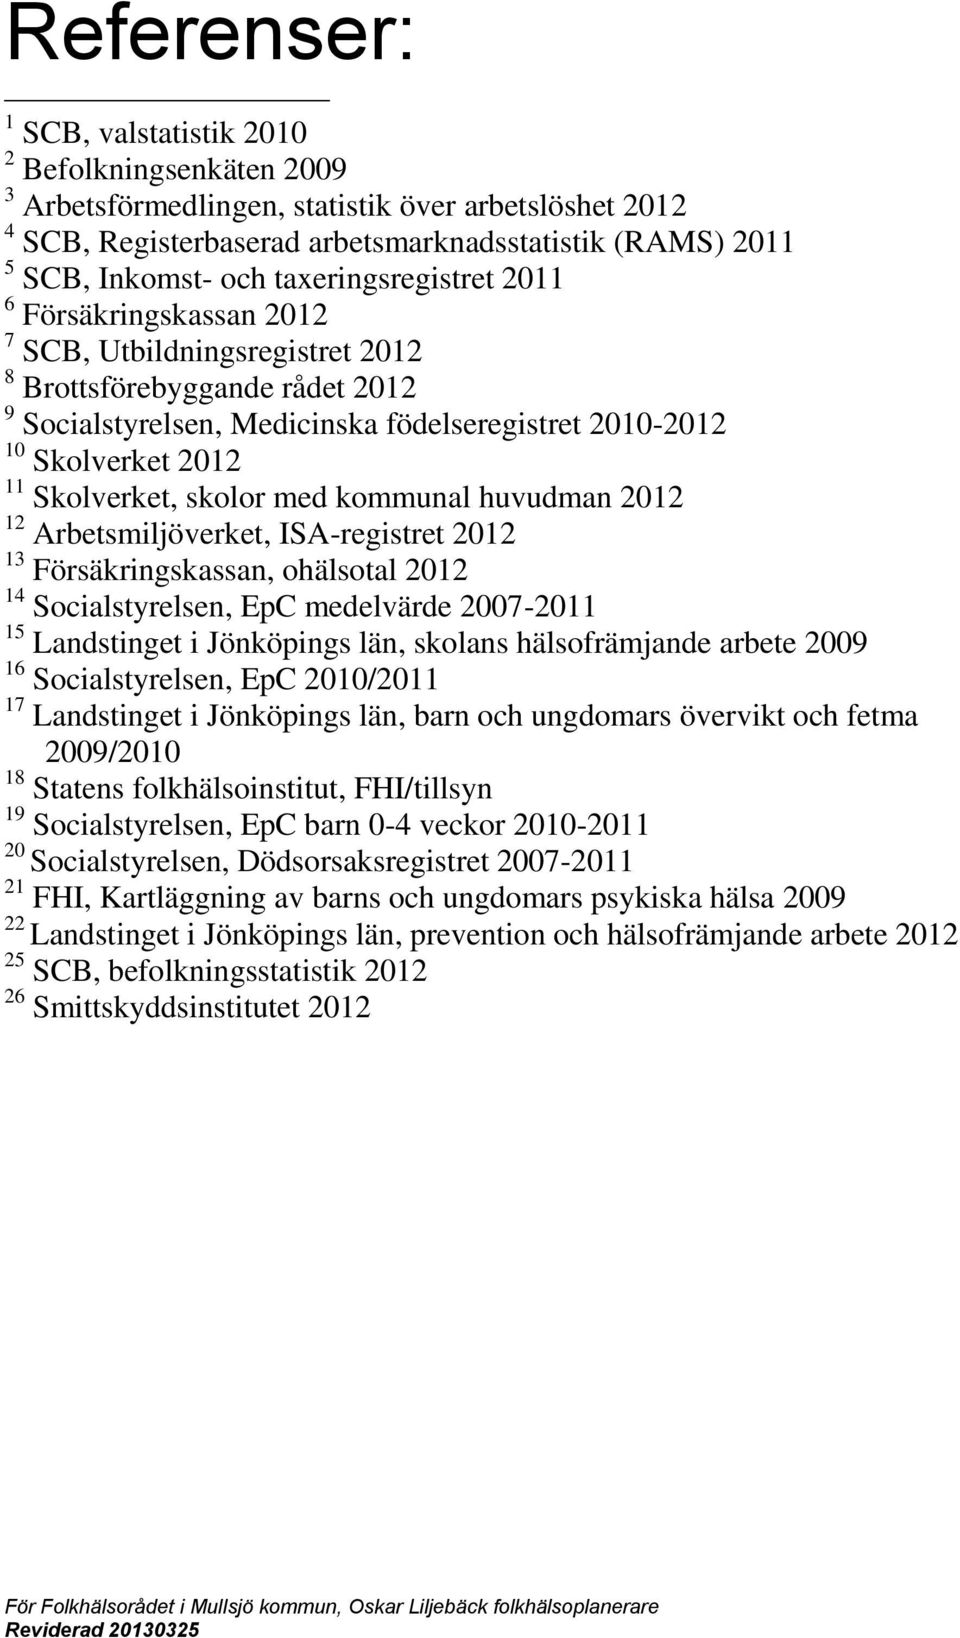 Skolverket, skolor med kommunal huvudman 2012 12 Arbetsmiljöverket, ISA-registret 2012 13 Försäkringskassan, ohälsotal 2012 14 Socialstyrelsen, EpC medelvärde 2007-2011 15 Landstinget i Jönköpings